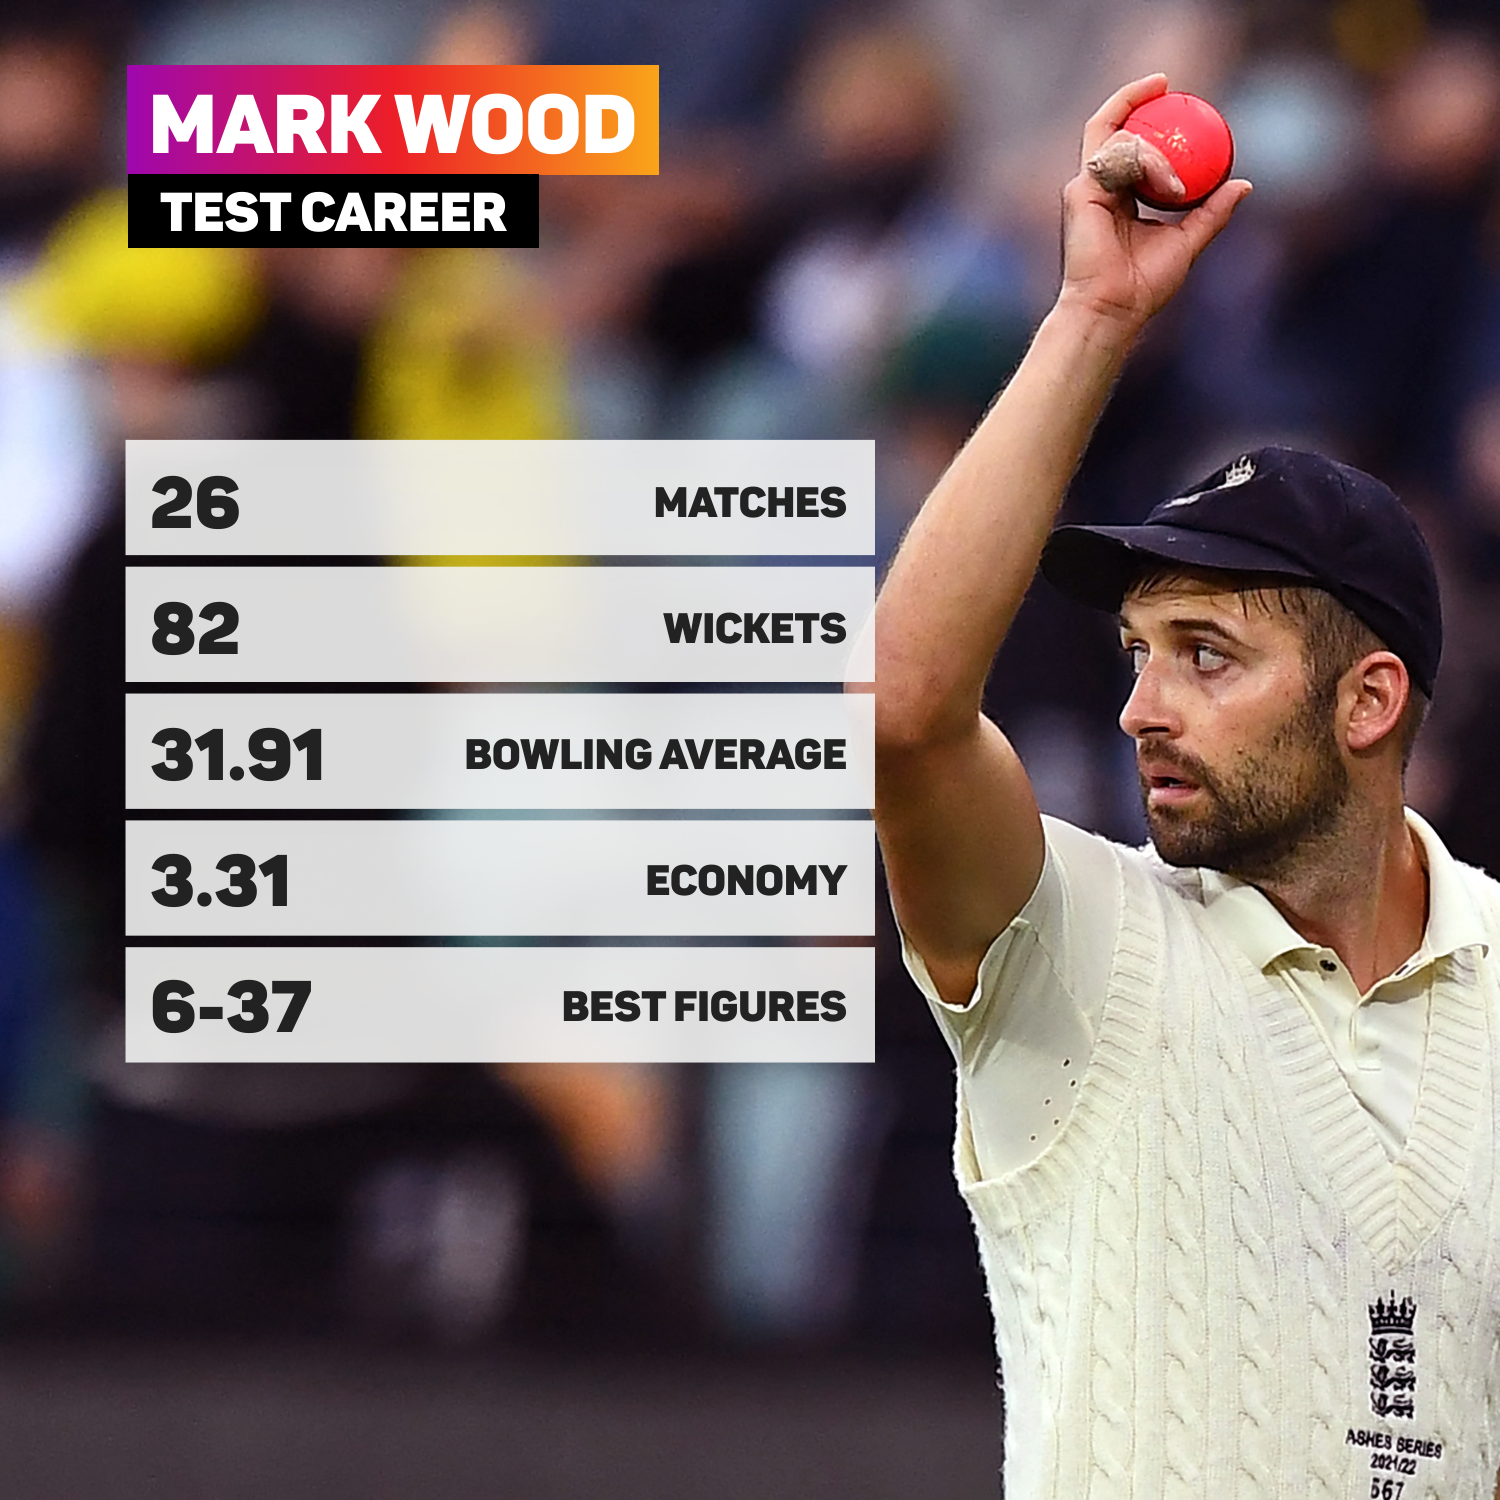 Mark Wood's Test career